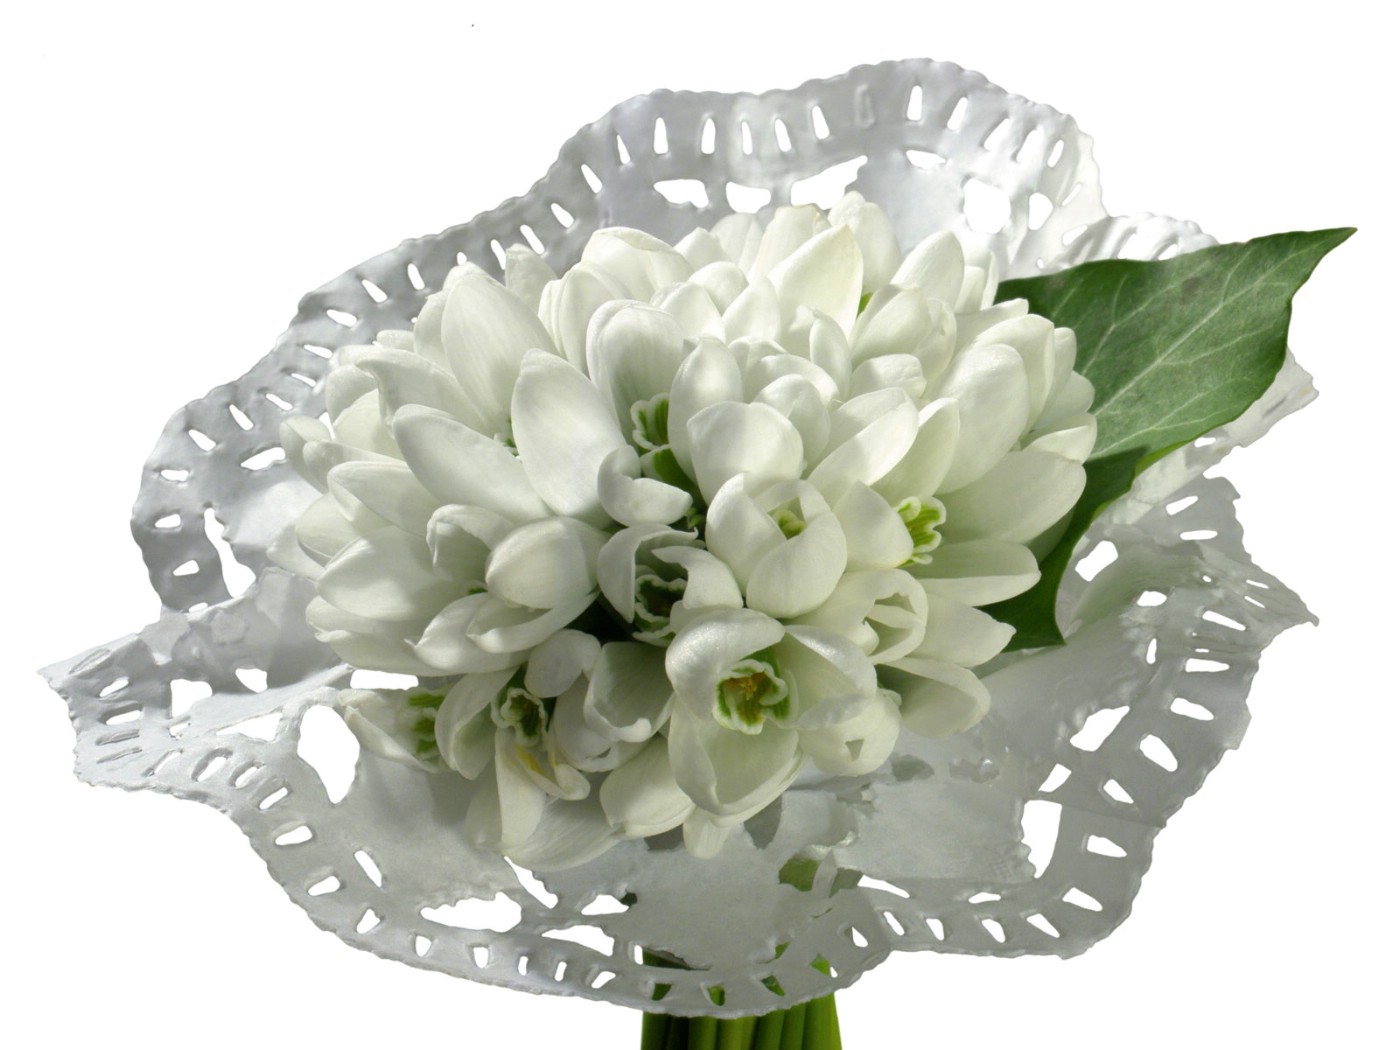 壁纸1400x1050白色花朵 2 8壁纸 白色花朵壁纸 白色花朵图片 白色花朵素材 花卉壁纸 花卉图库 花卉图片素材桌面壁纸